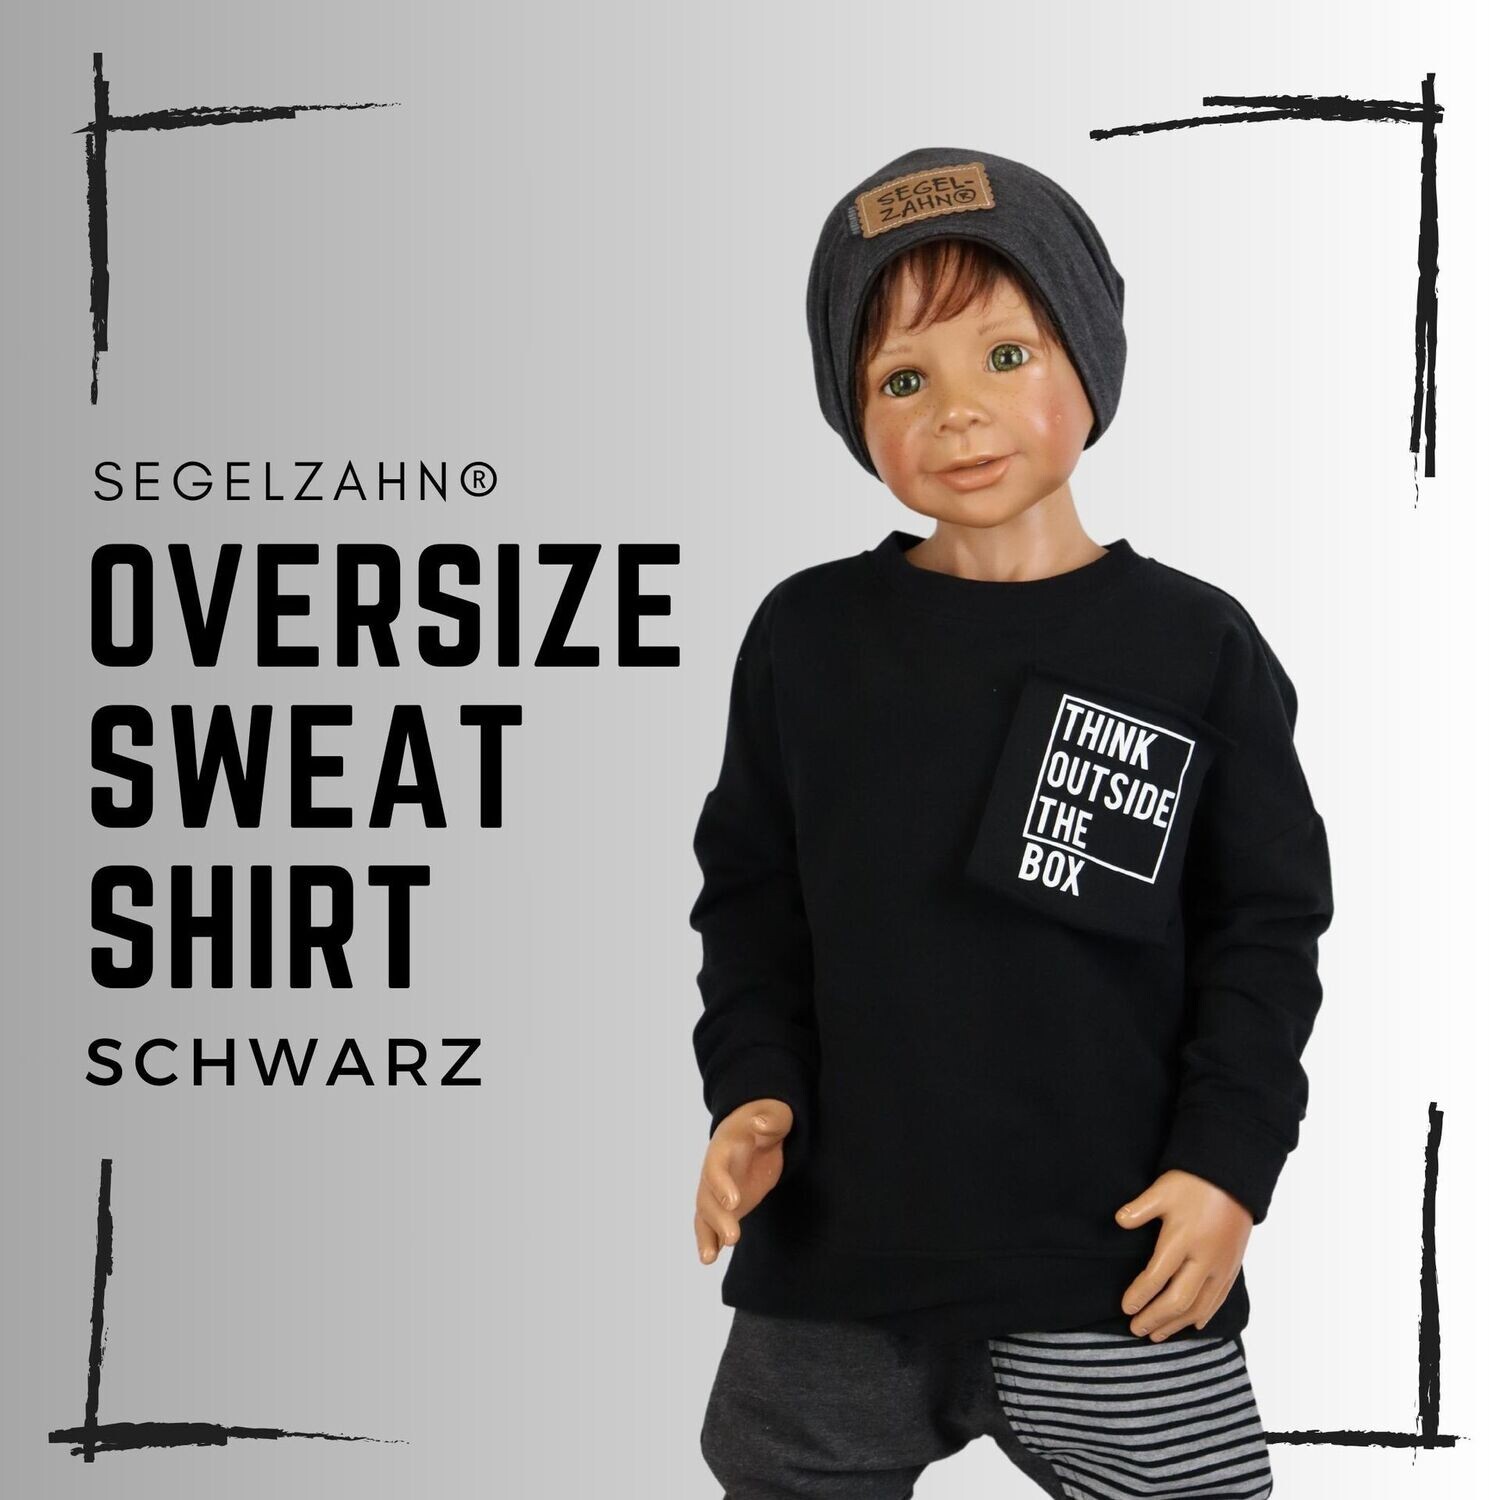 Oversize Sweatshirt für Kinder Schwarz - Unisex statement Pullover für Jungen und Mädchen von Segelzahn think outside the box Kinderpullover